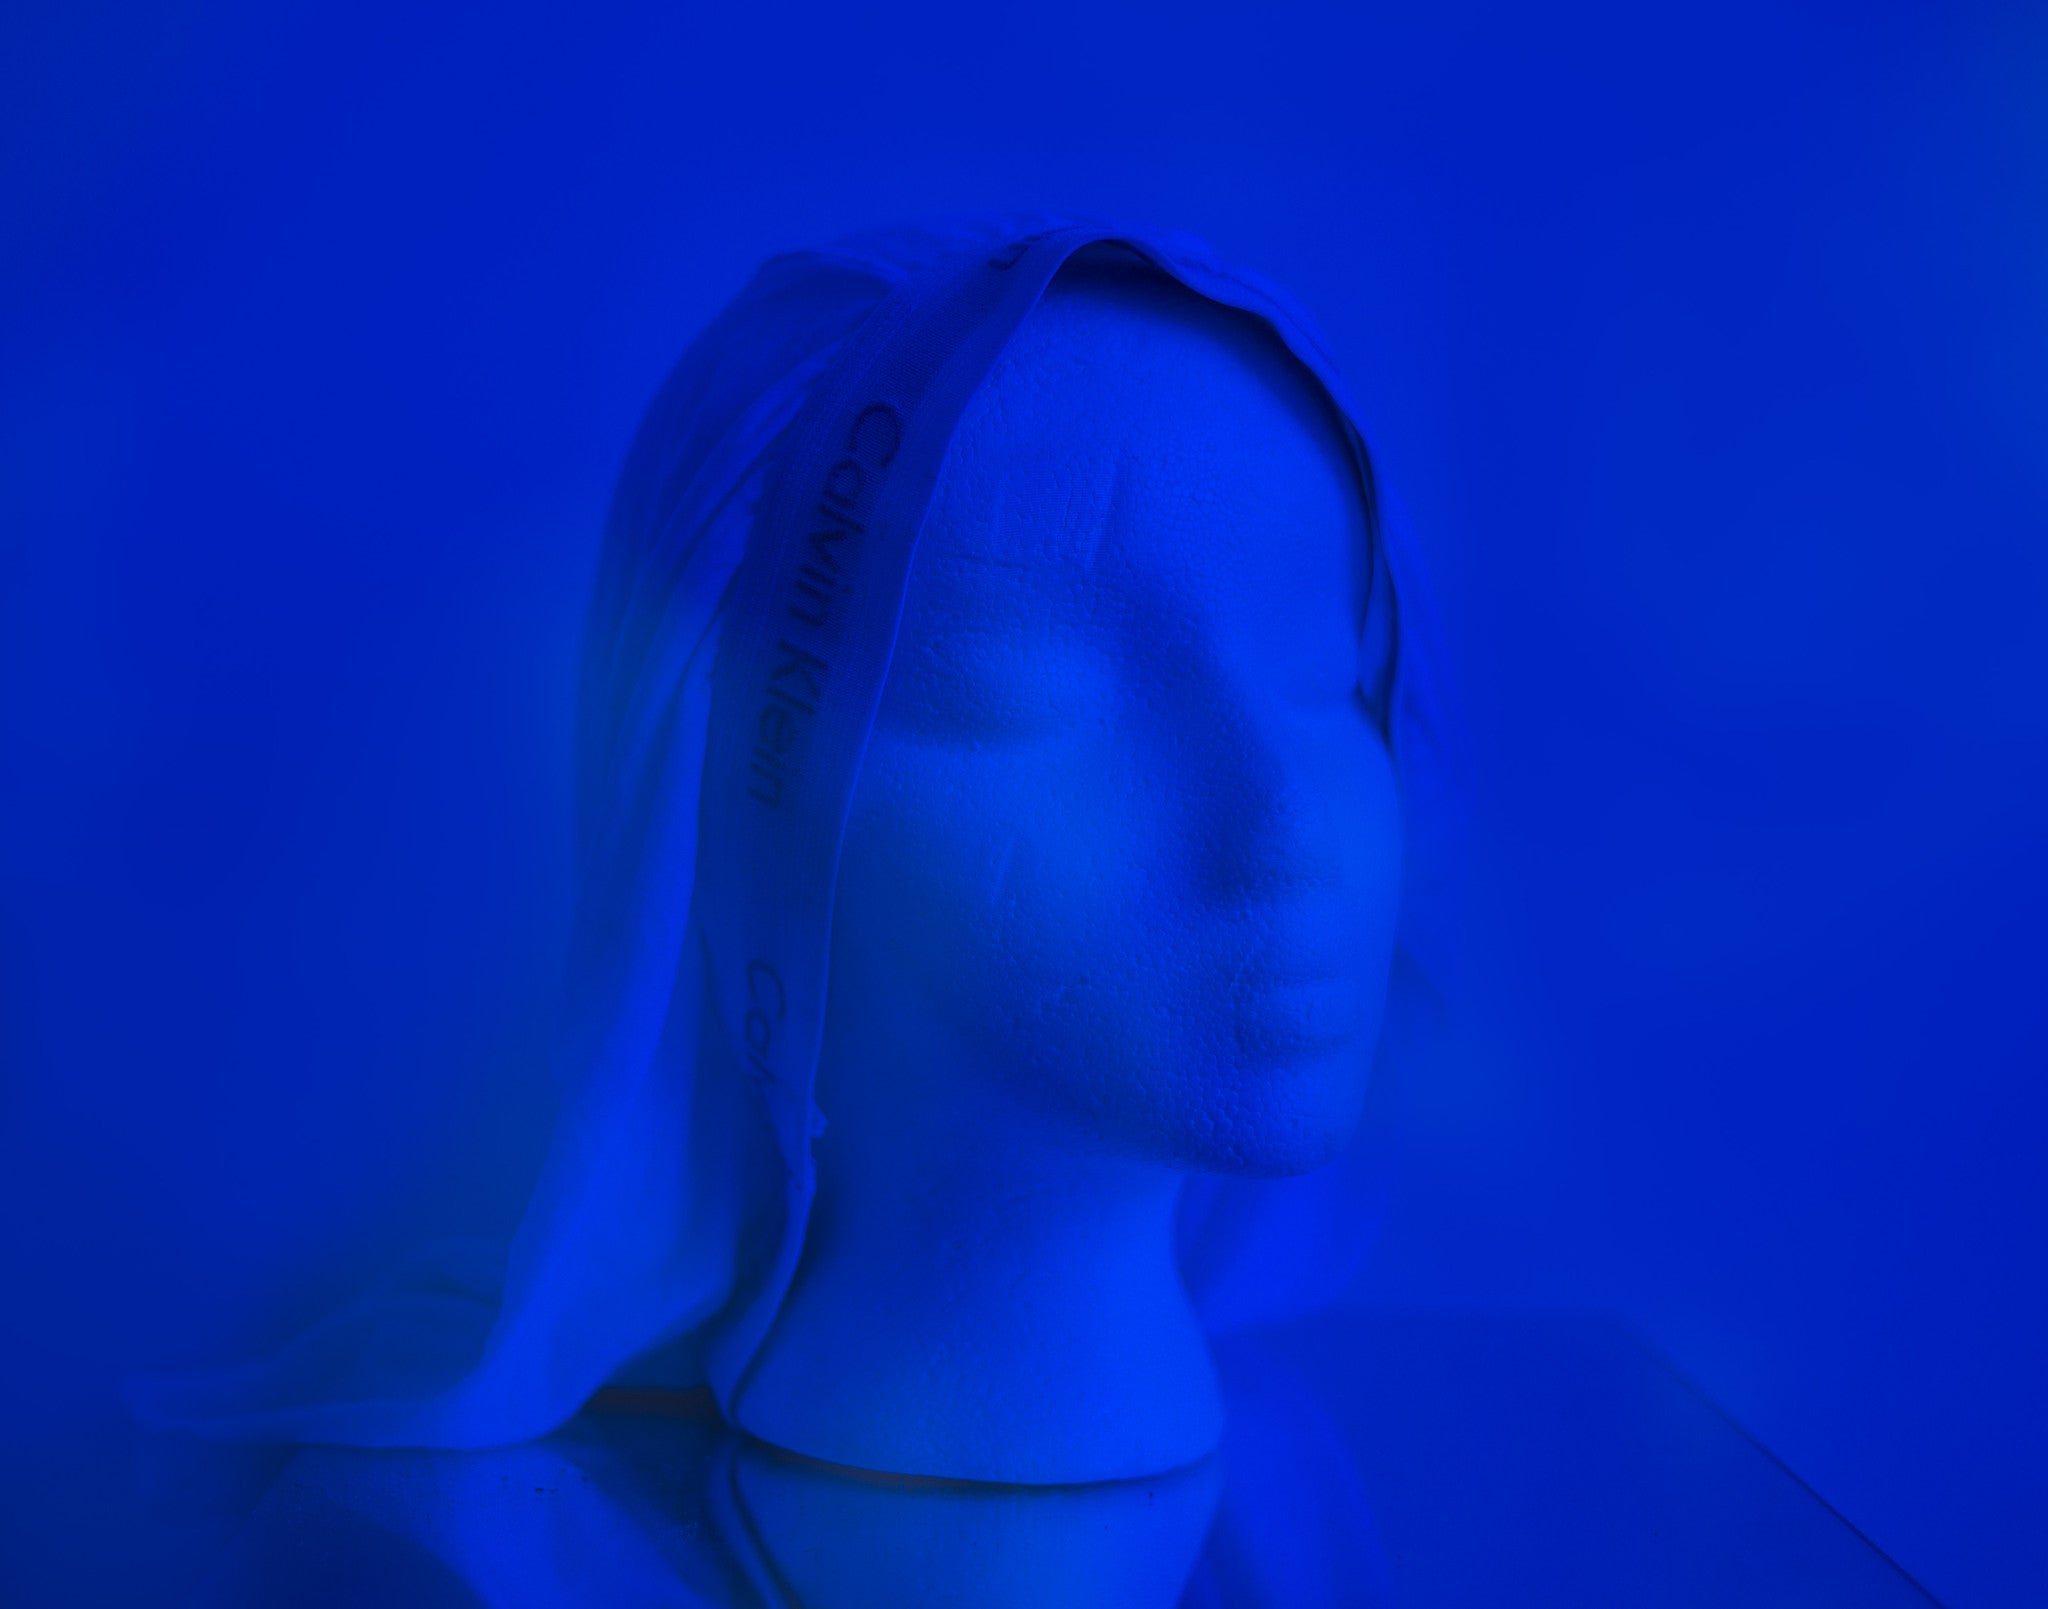 Jo Karlins, "Virgin in Blue"